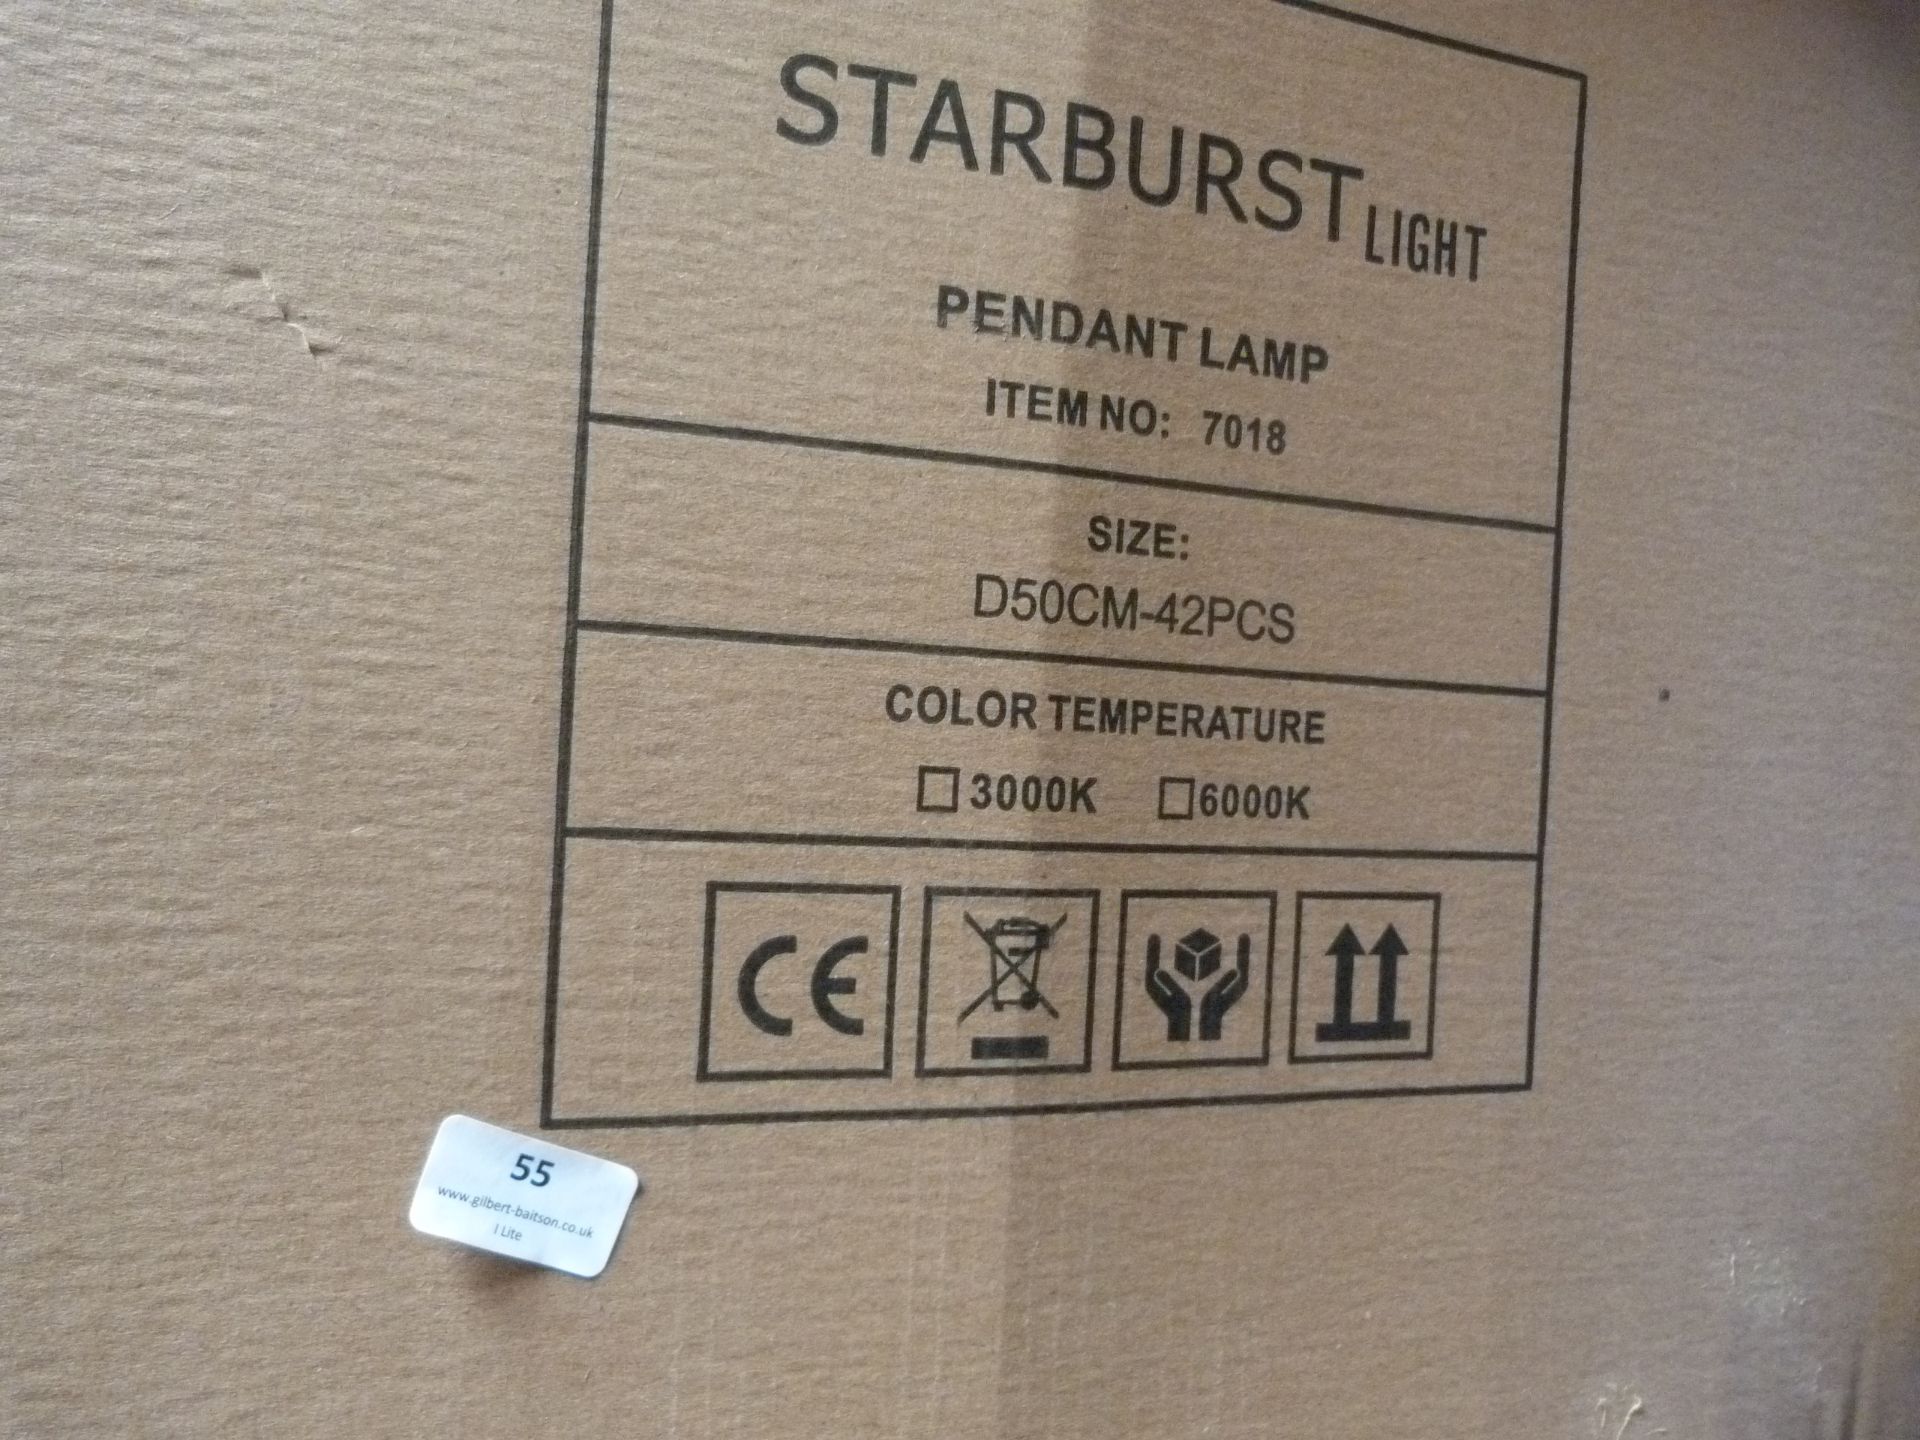 *6 Starburst Pendant Lamps Item No.7018, Size: D50CM-42PCS - Image 2 of 3